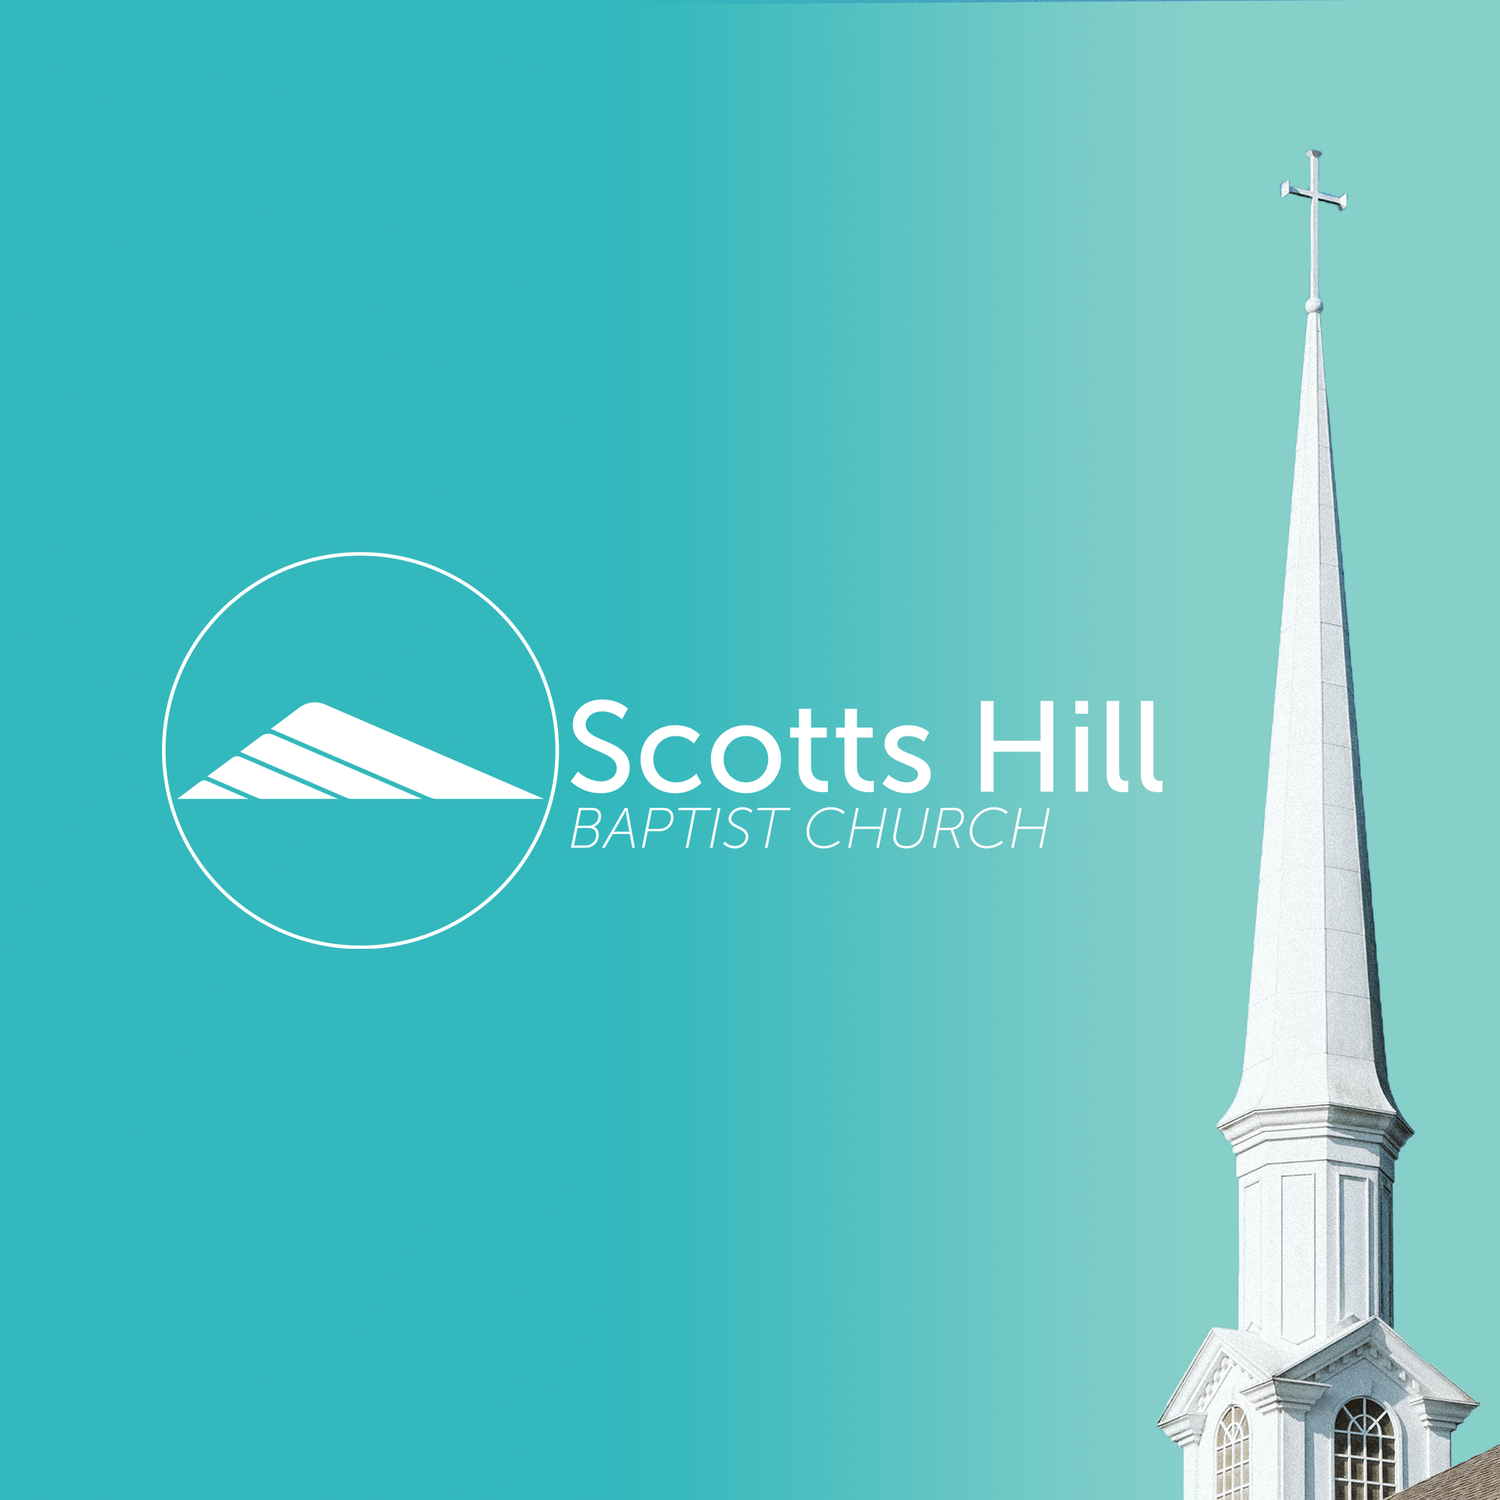 Scotts Hill Podcast